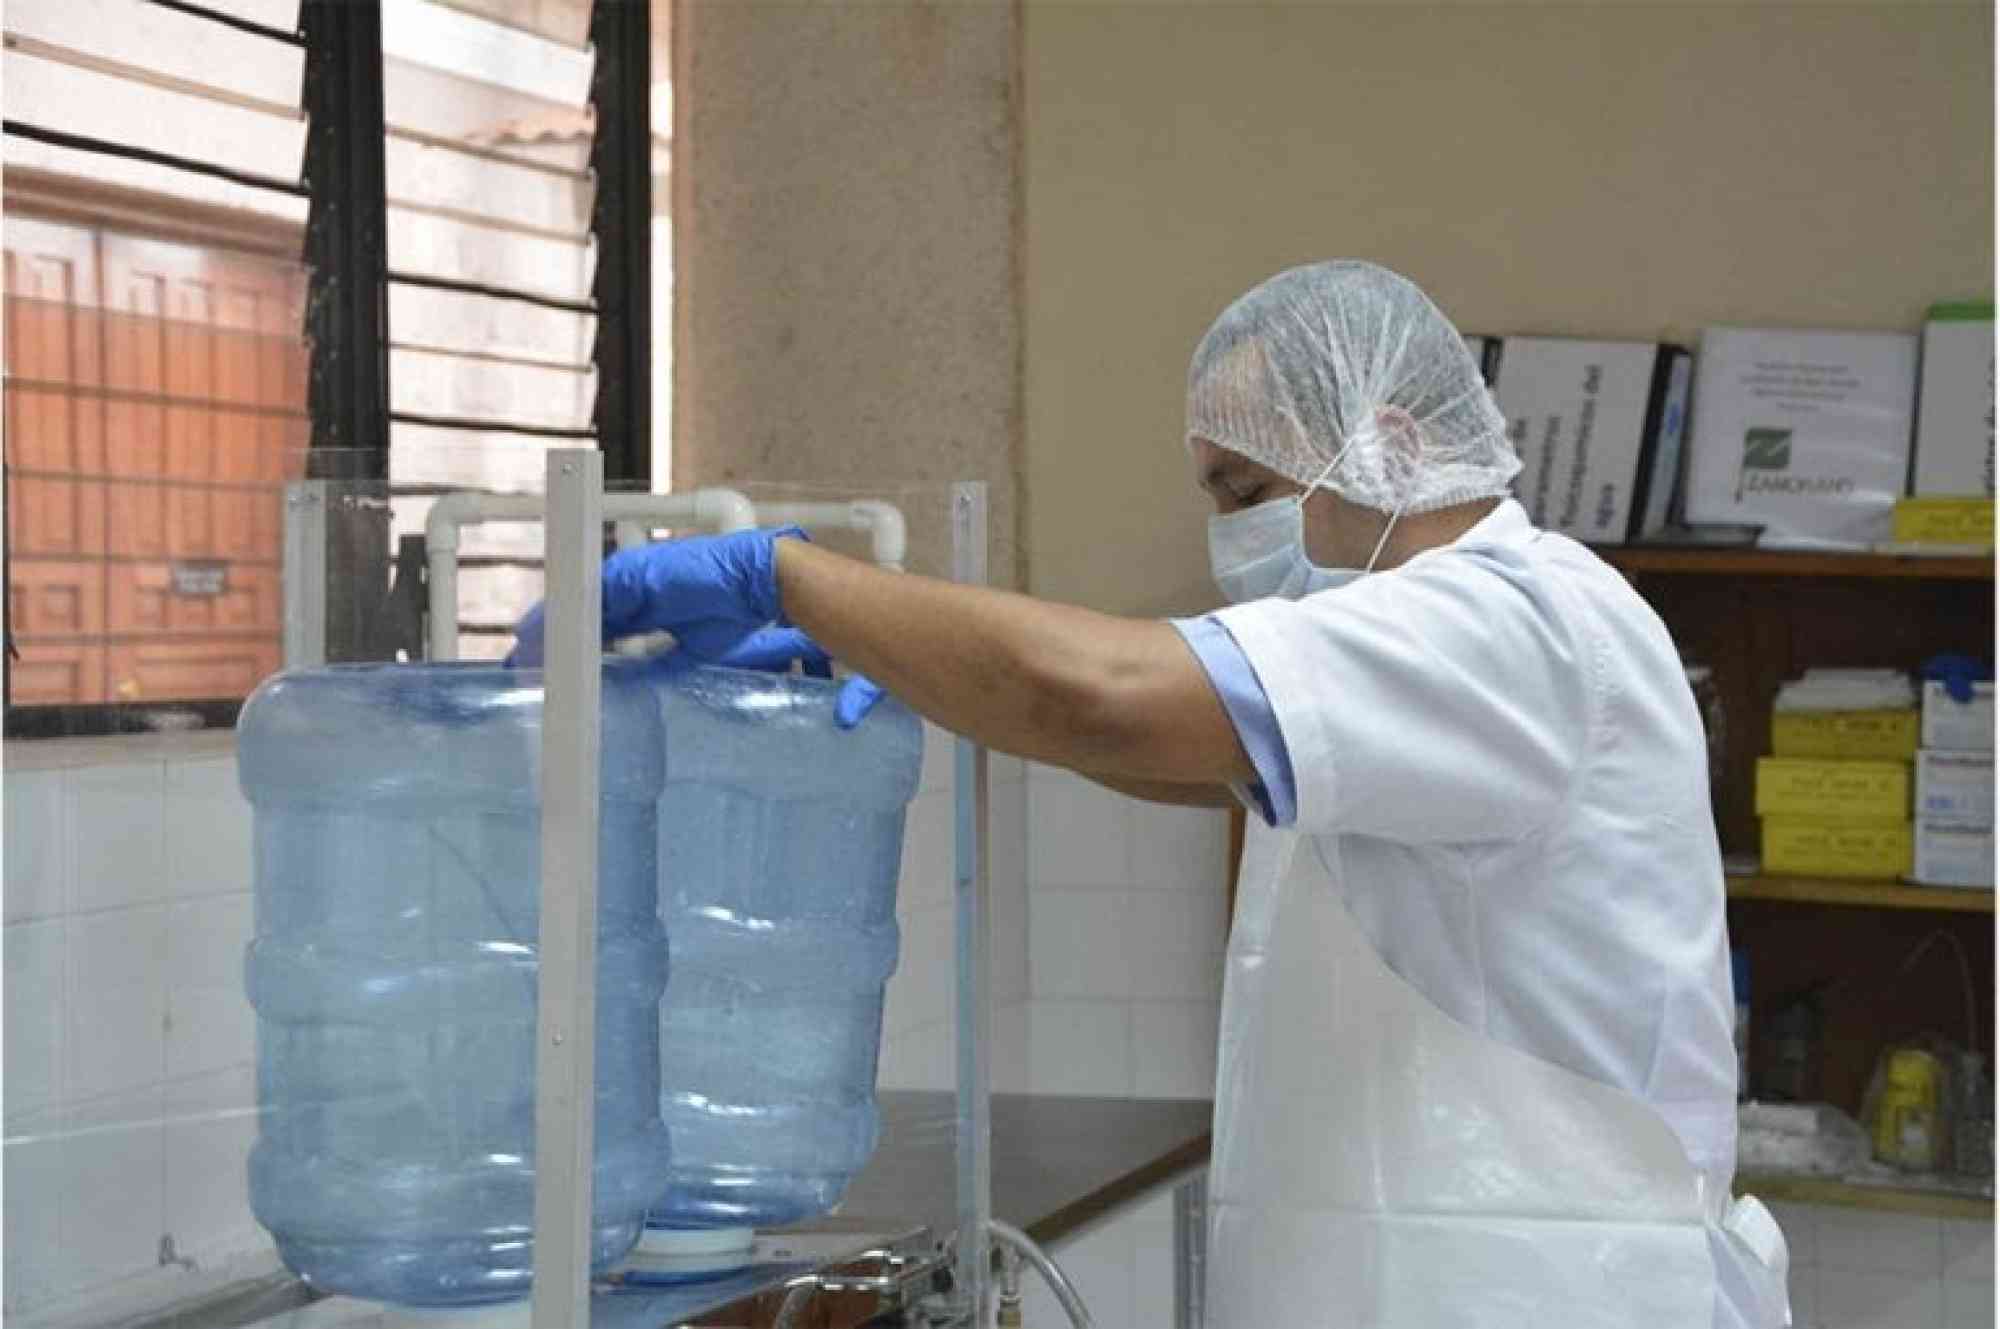 Anuncio de Planta purificadora de agua en bidones en Surquillo en Lima